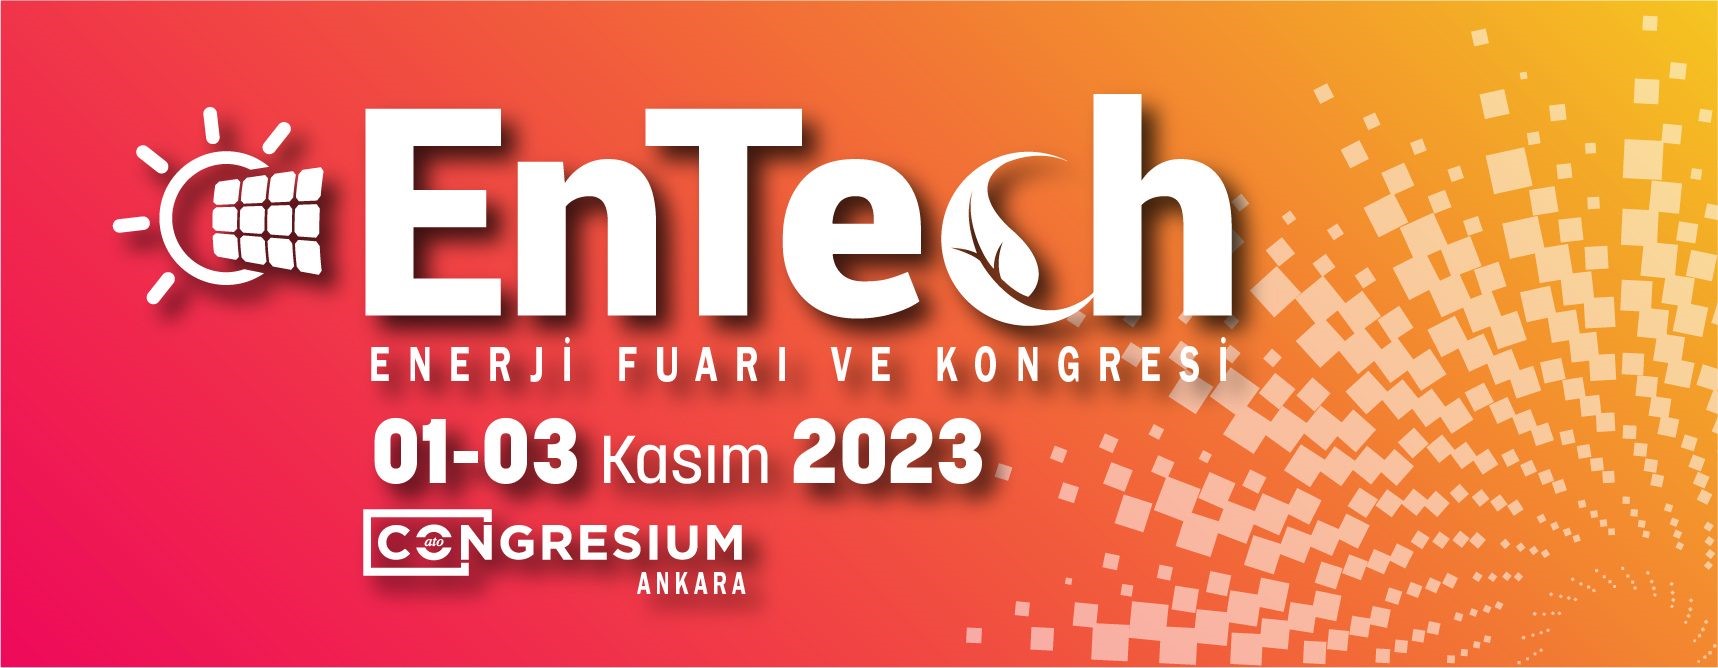 4. ENTECH - Enerji Fuarı & Kongresi, 01 -03 Kasım 2023 tarihlerinde Congresium Ankara’da düzenlenecek